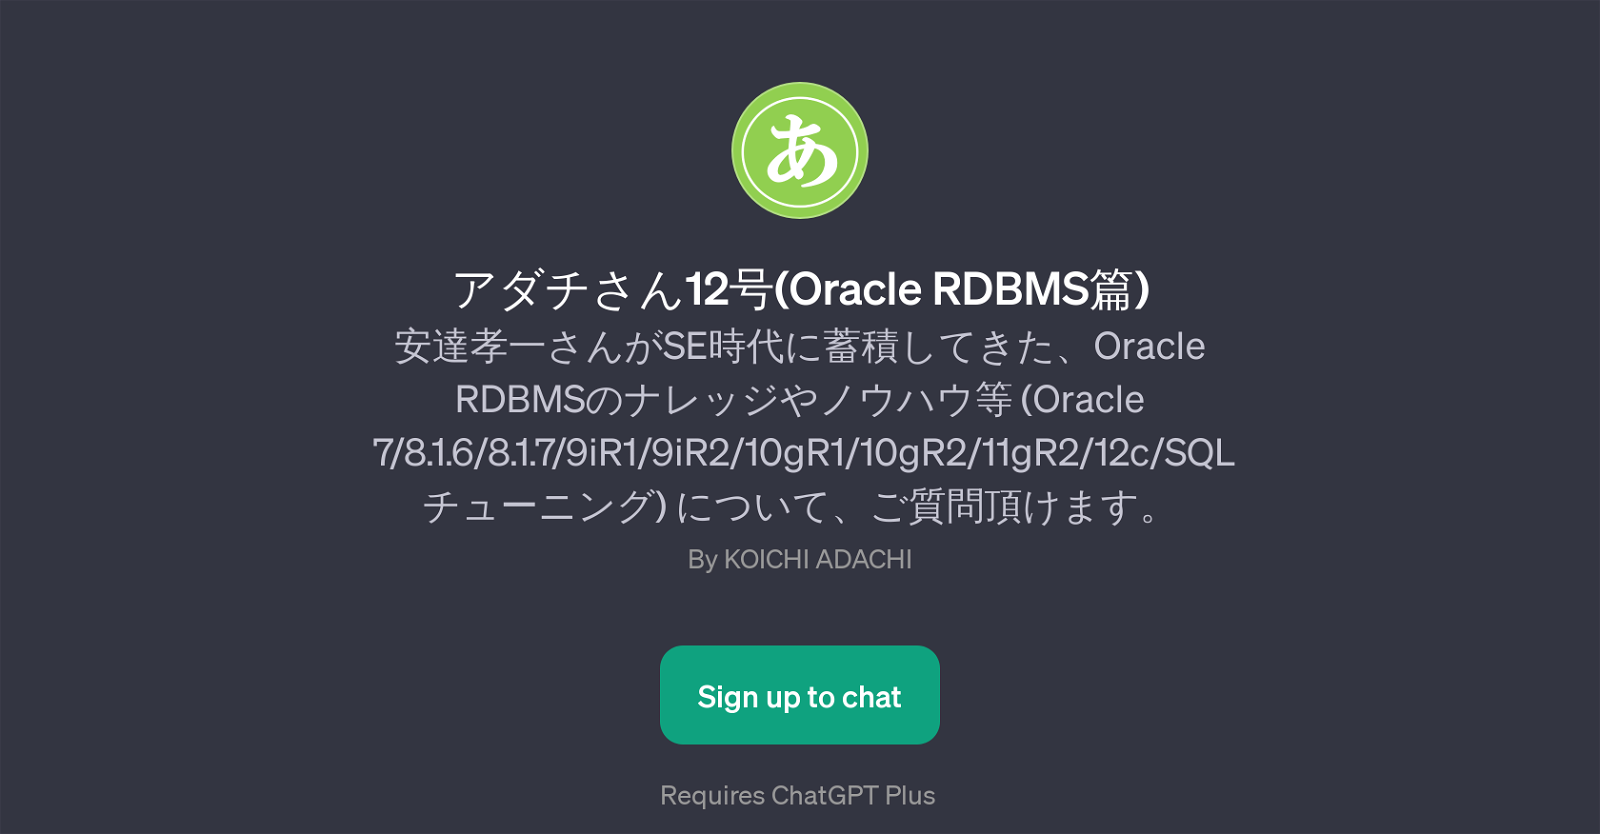 12(Oracle RDBMS) website